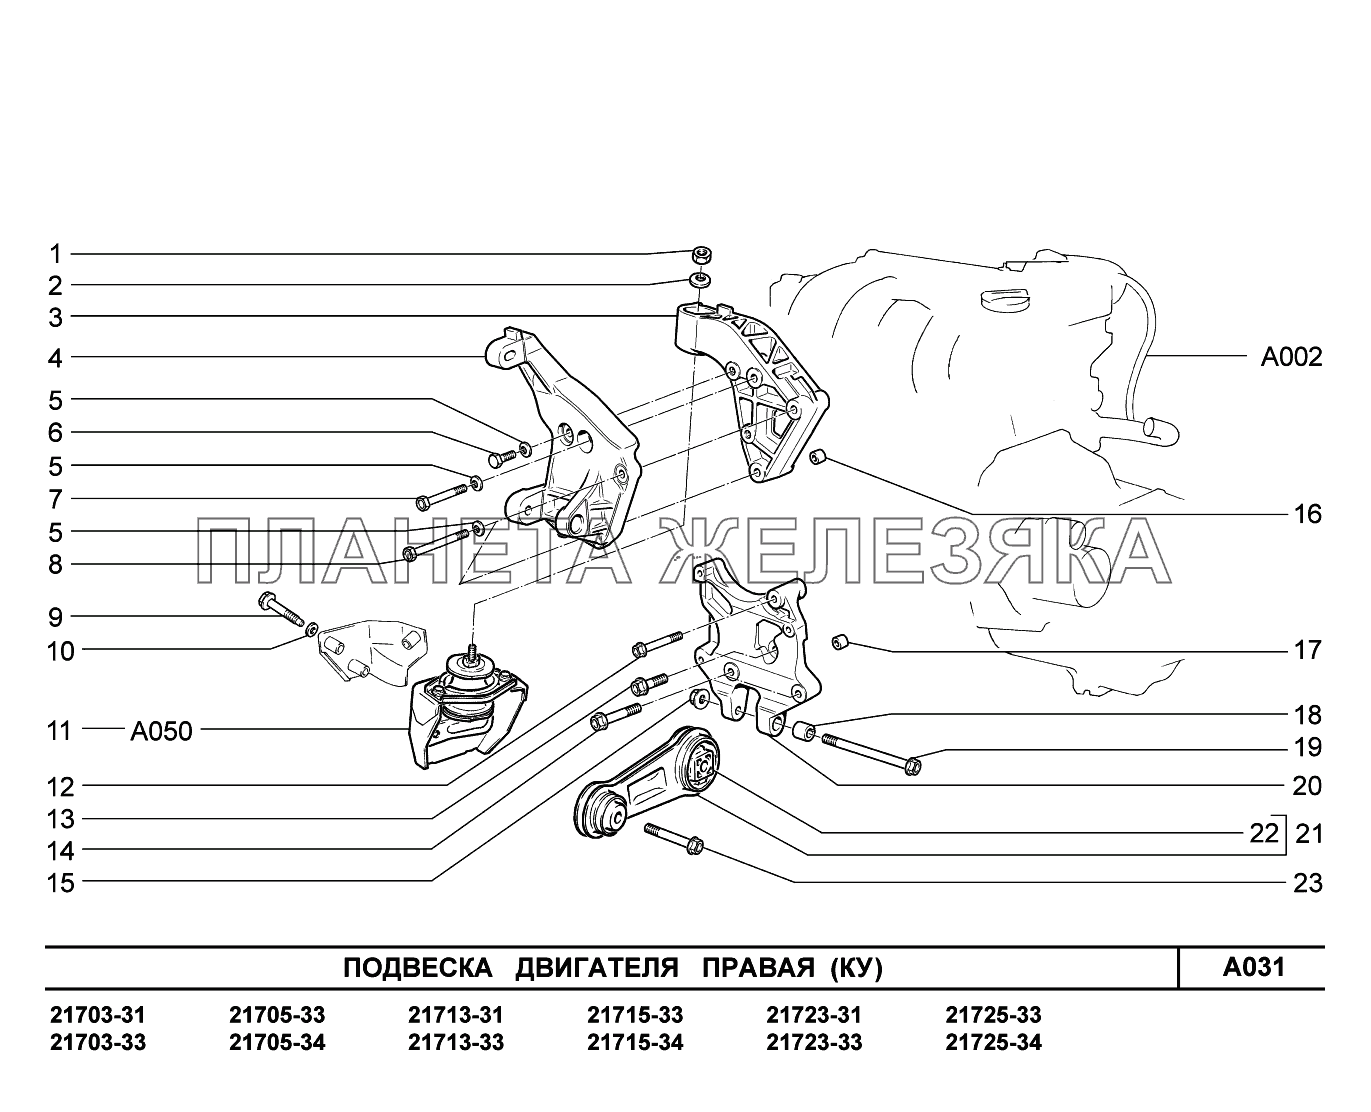 A031. Подвеска двигателя правая ВАЗ-2170 